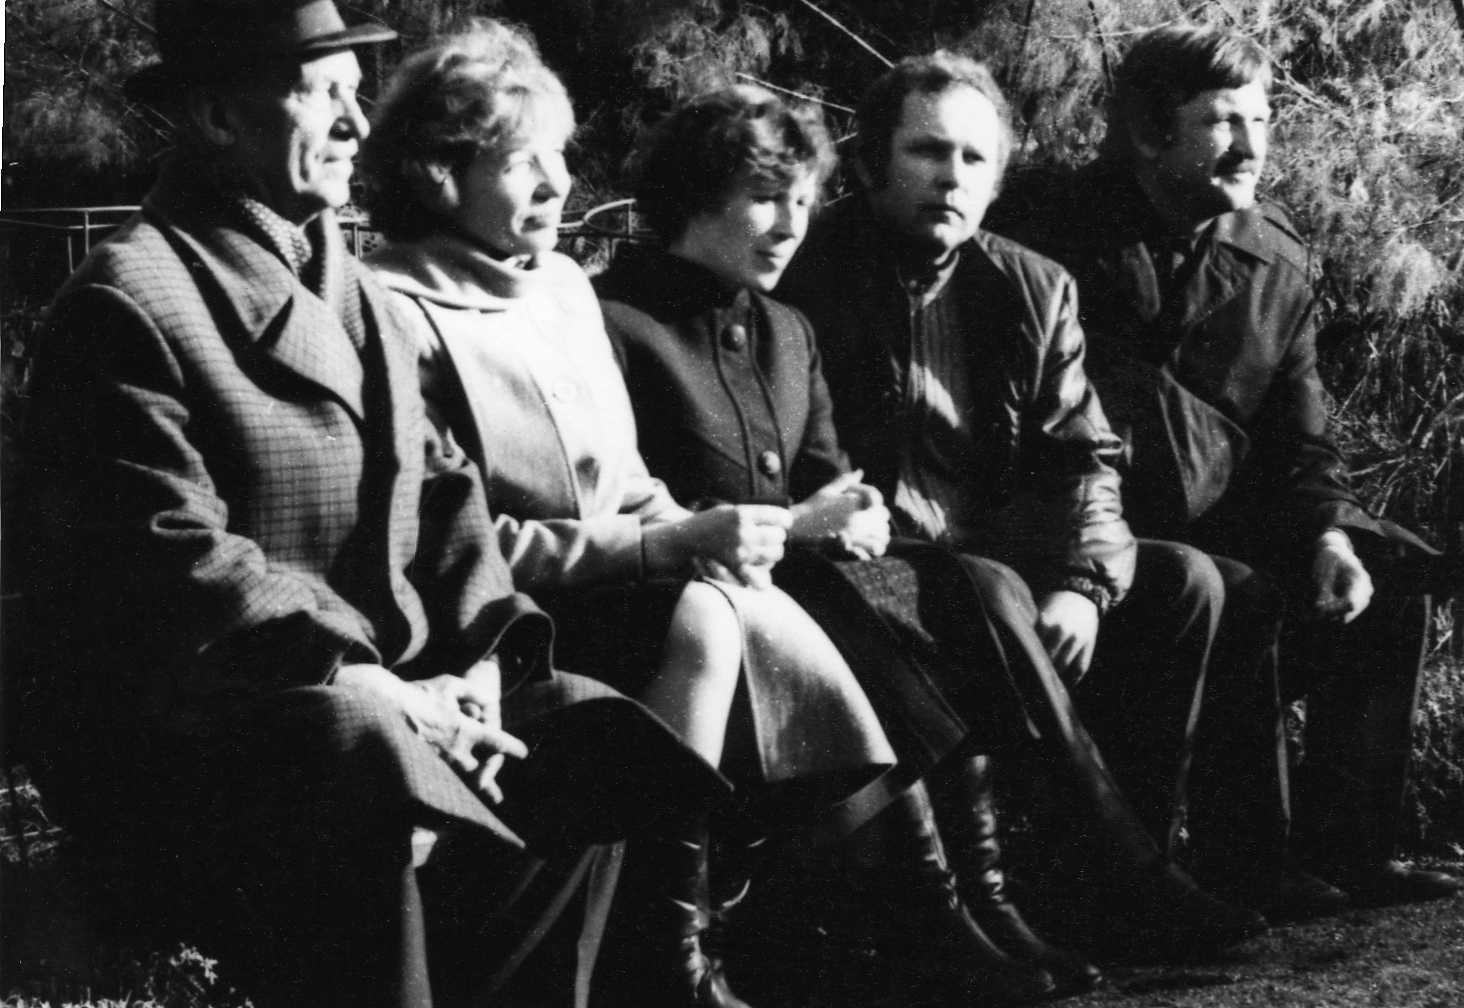 Iš kairės: profesorius, agronomas Petras Vasinauskas su artimaisiais – Angele, Regina, sūnumis Augiu ir Romualdu. 1978 m.